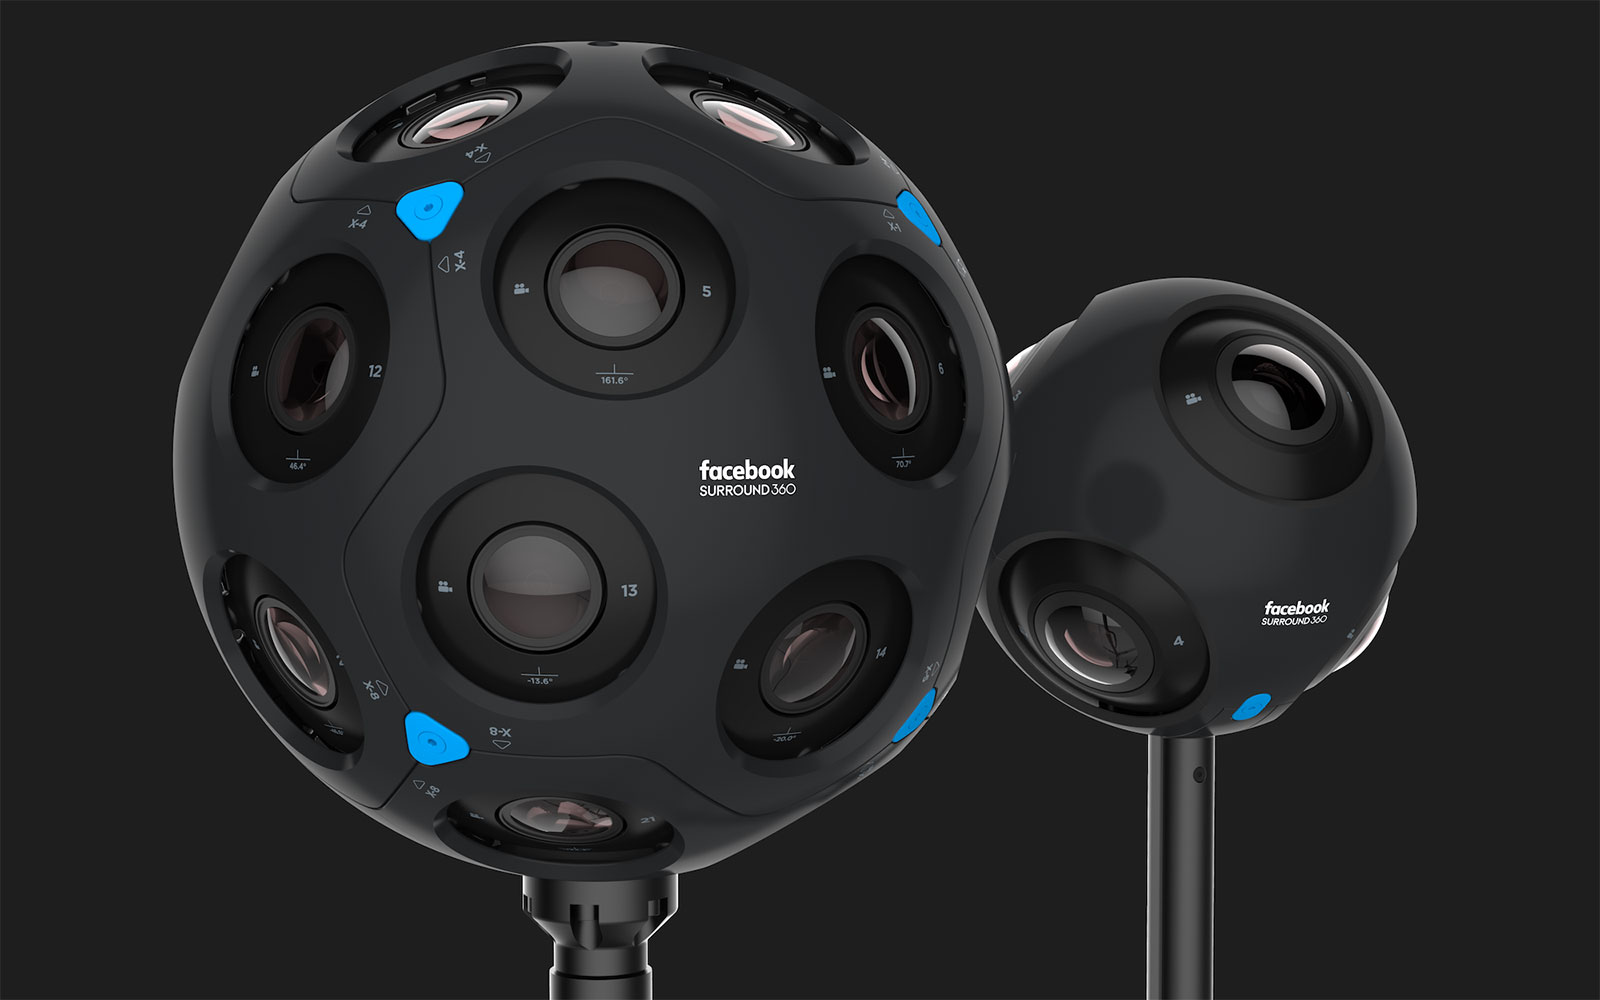 كاميرا 360 درجة: كل ما تريد معرفته 2